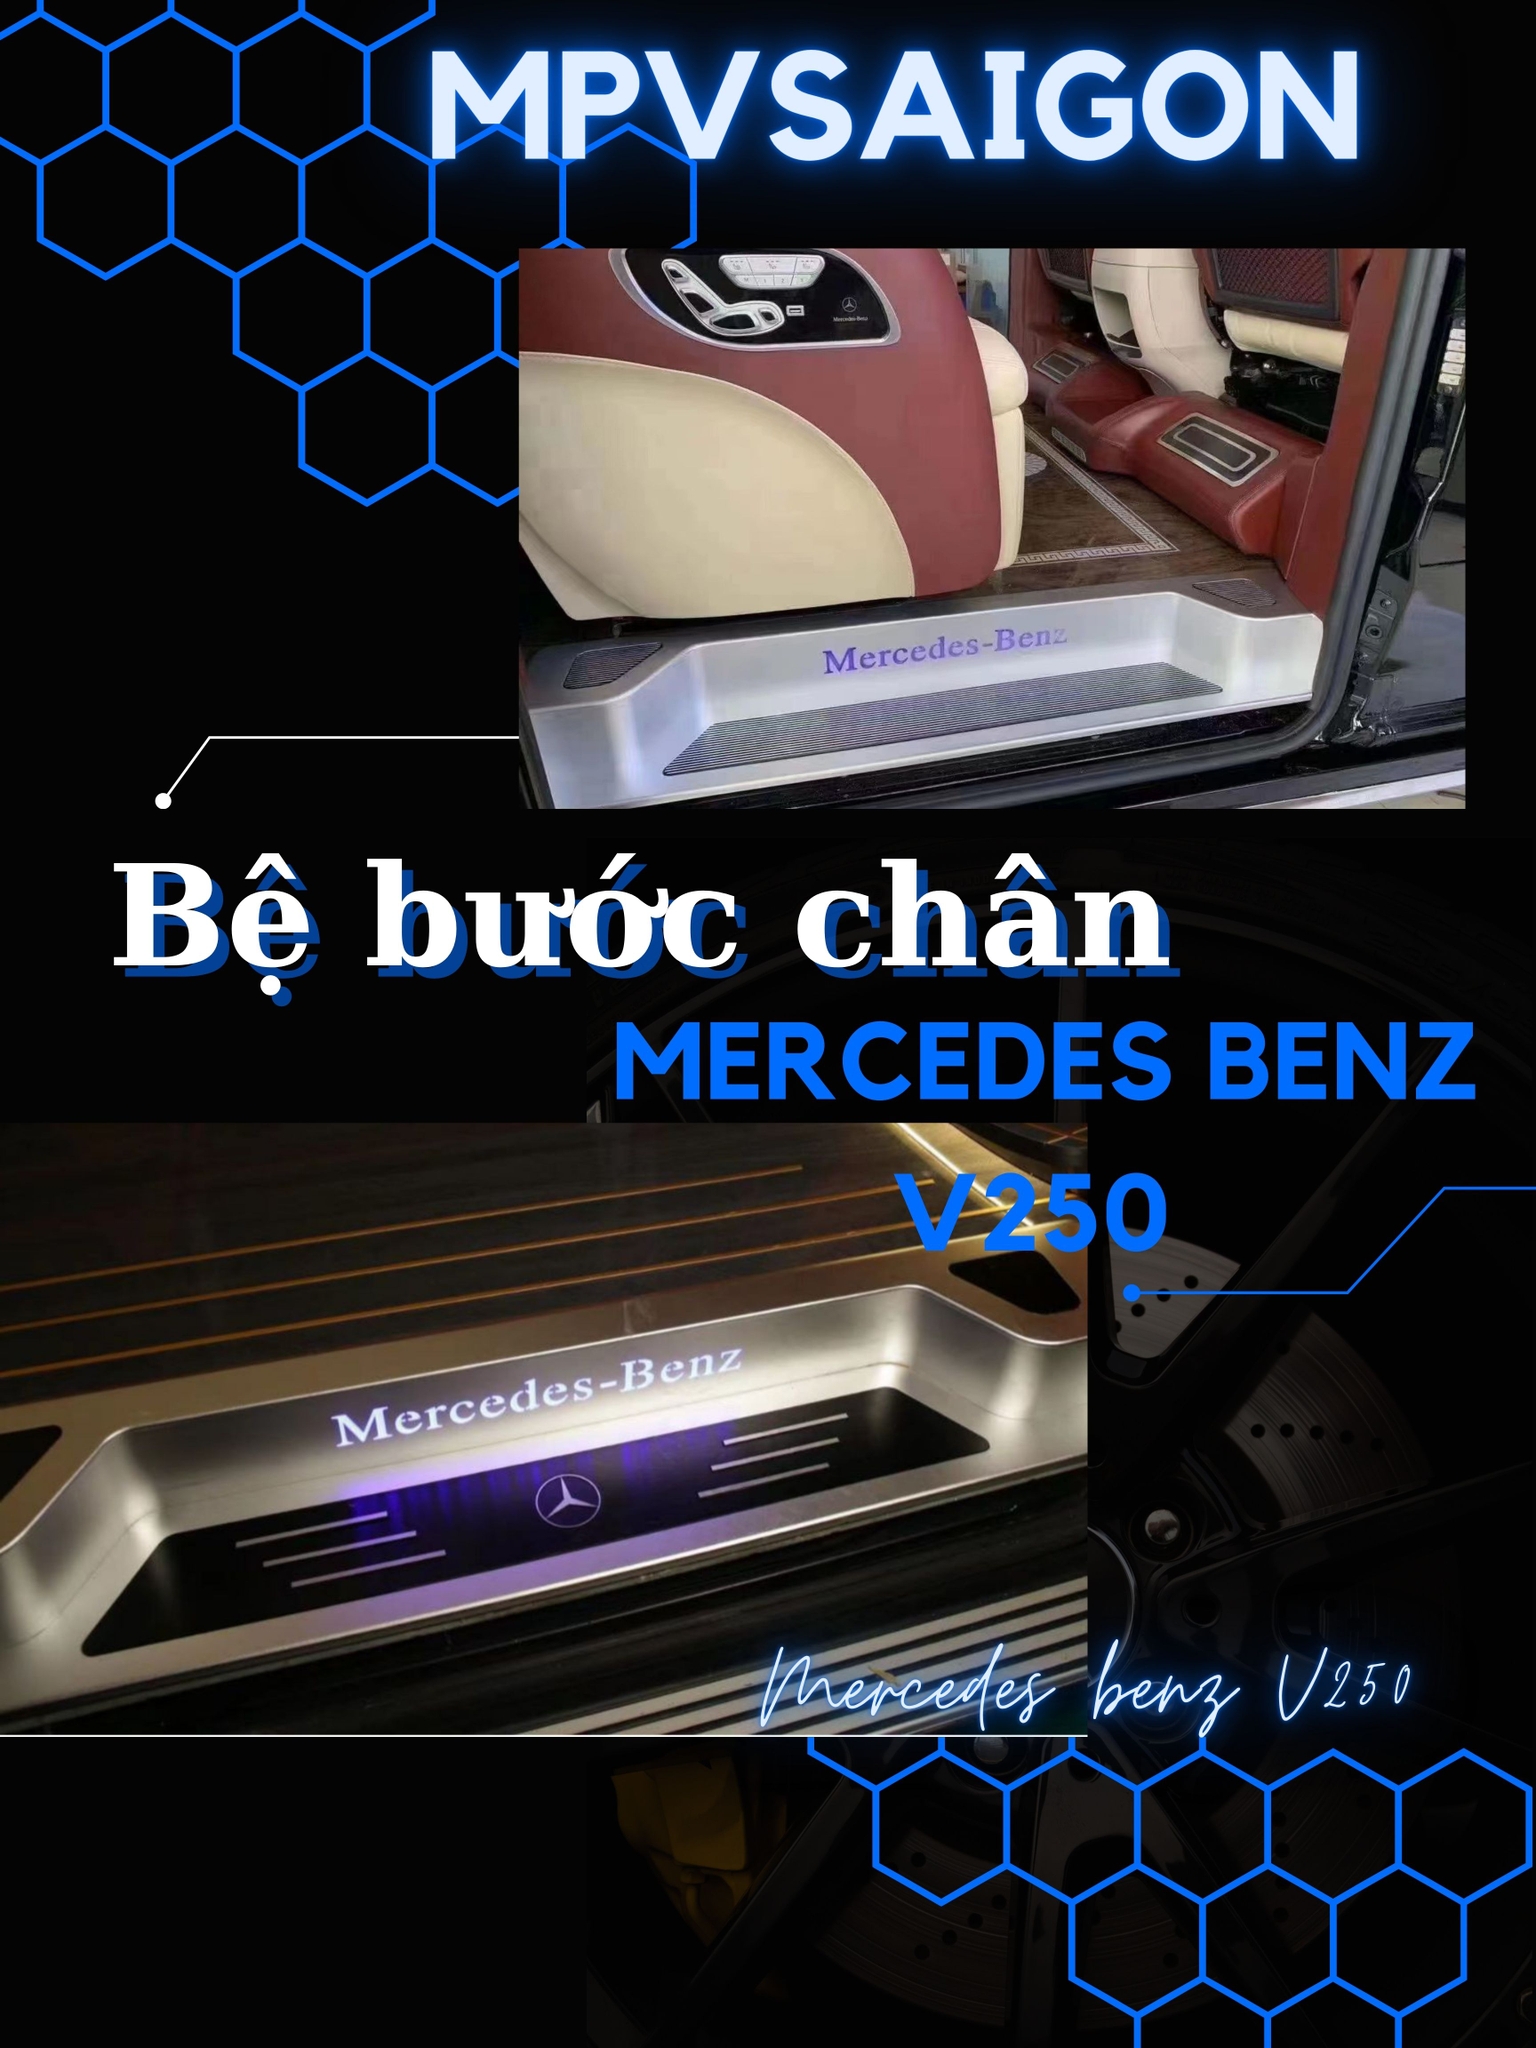  Bệ bước chân dành riêng cho Mercedes Benz V250